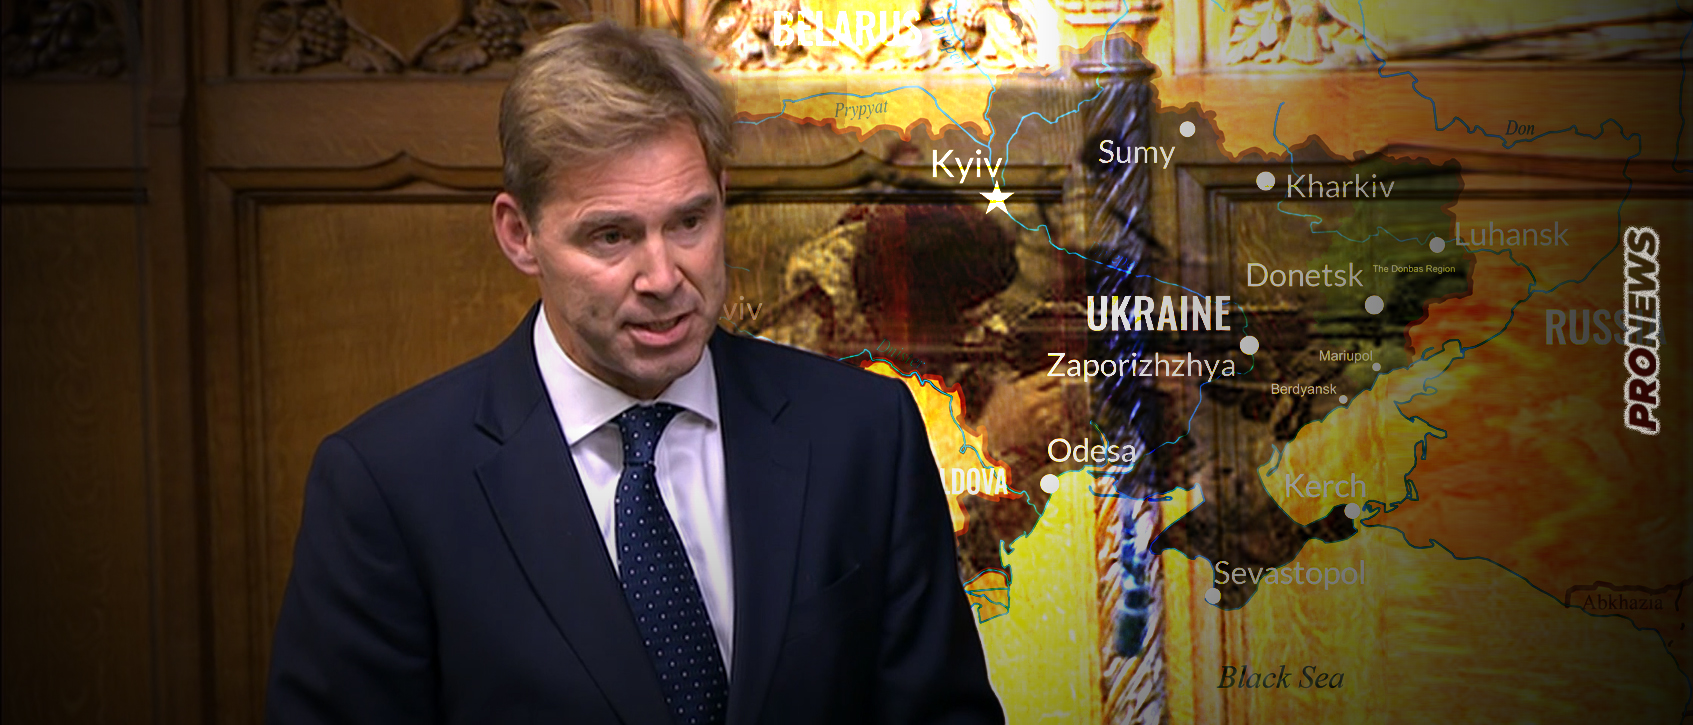 Πρώην Βρετανός υπουργός: «Είναι ανησυχητικό που οι Ρώσοι ανακάλυψαν ότι στρατιώτες μας πολεμούν εναντίον τους στην Ουκρανία»